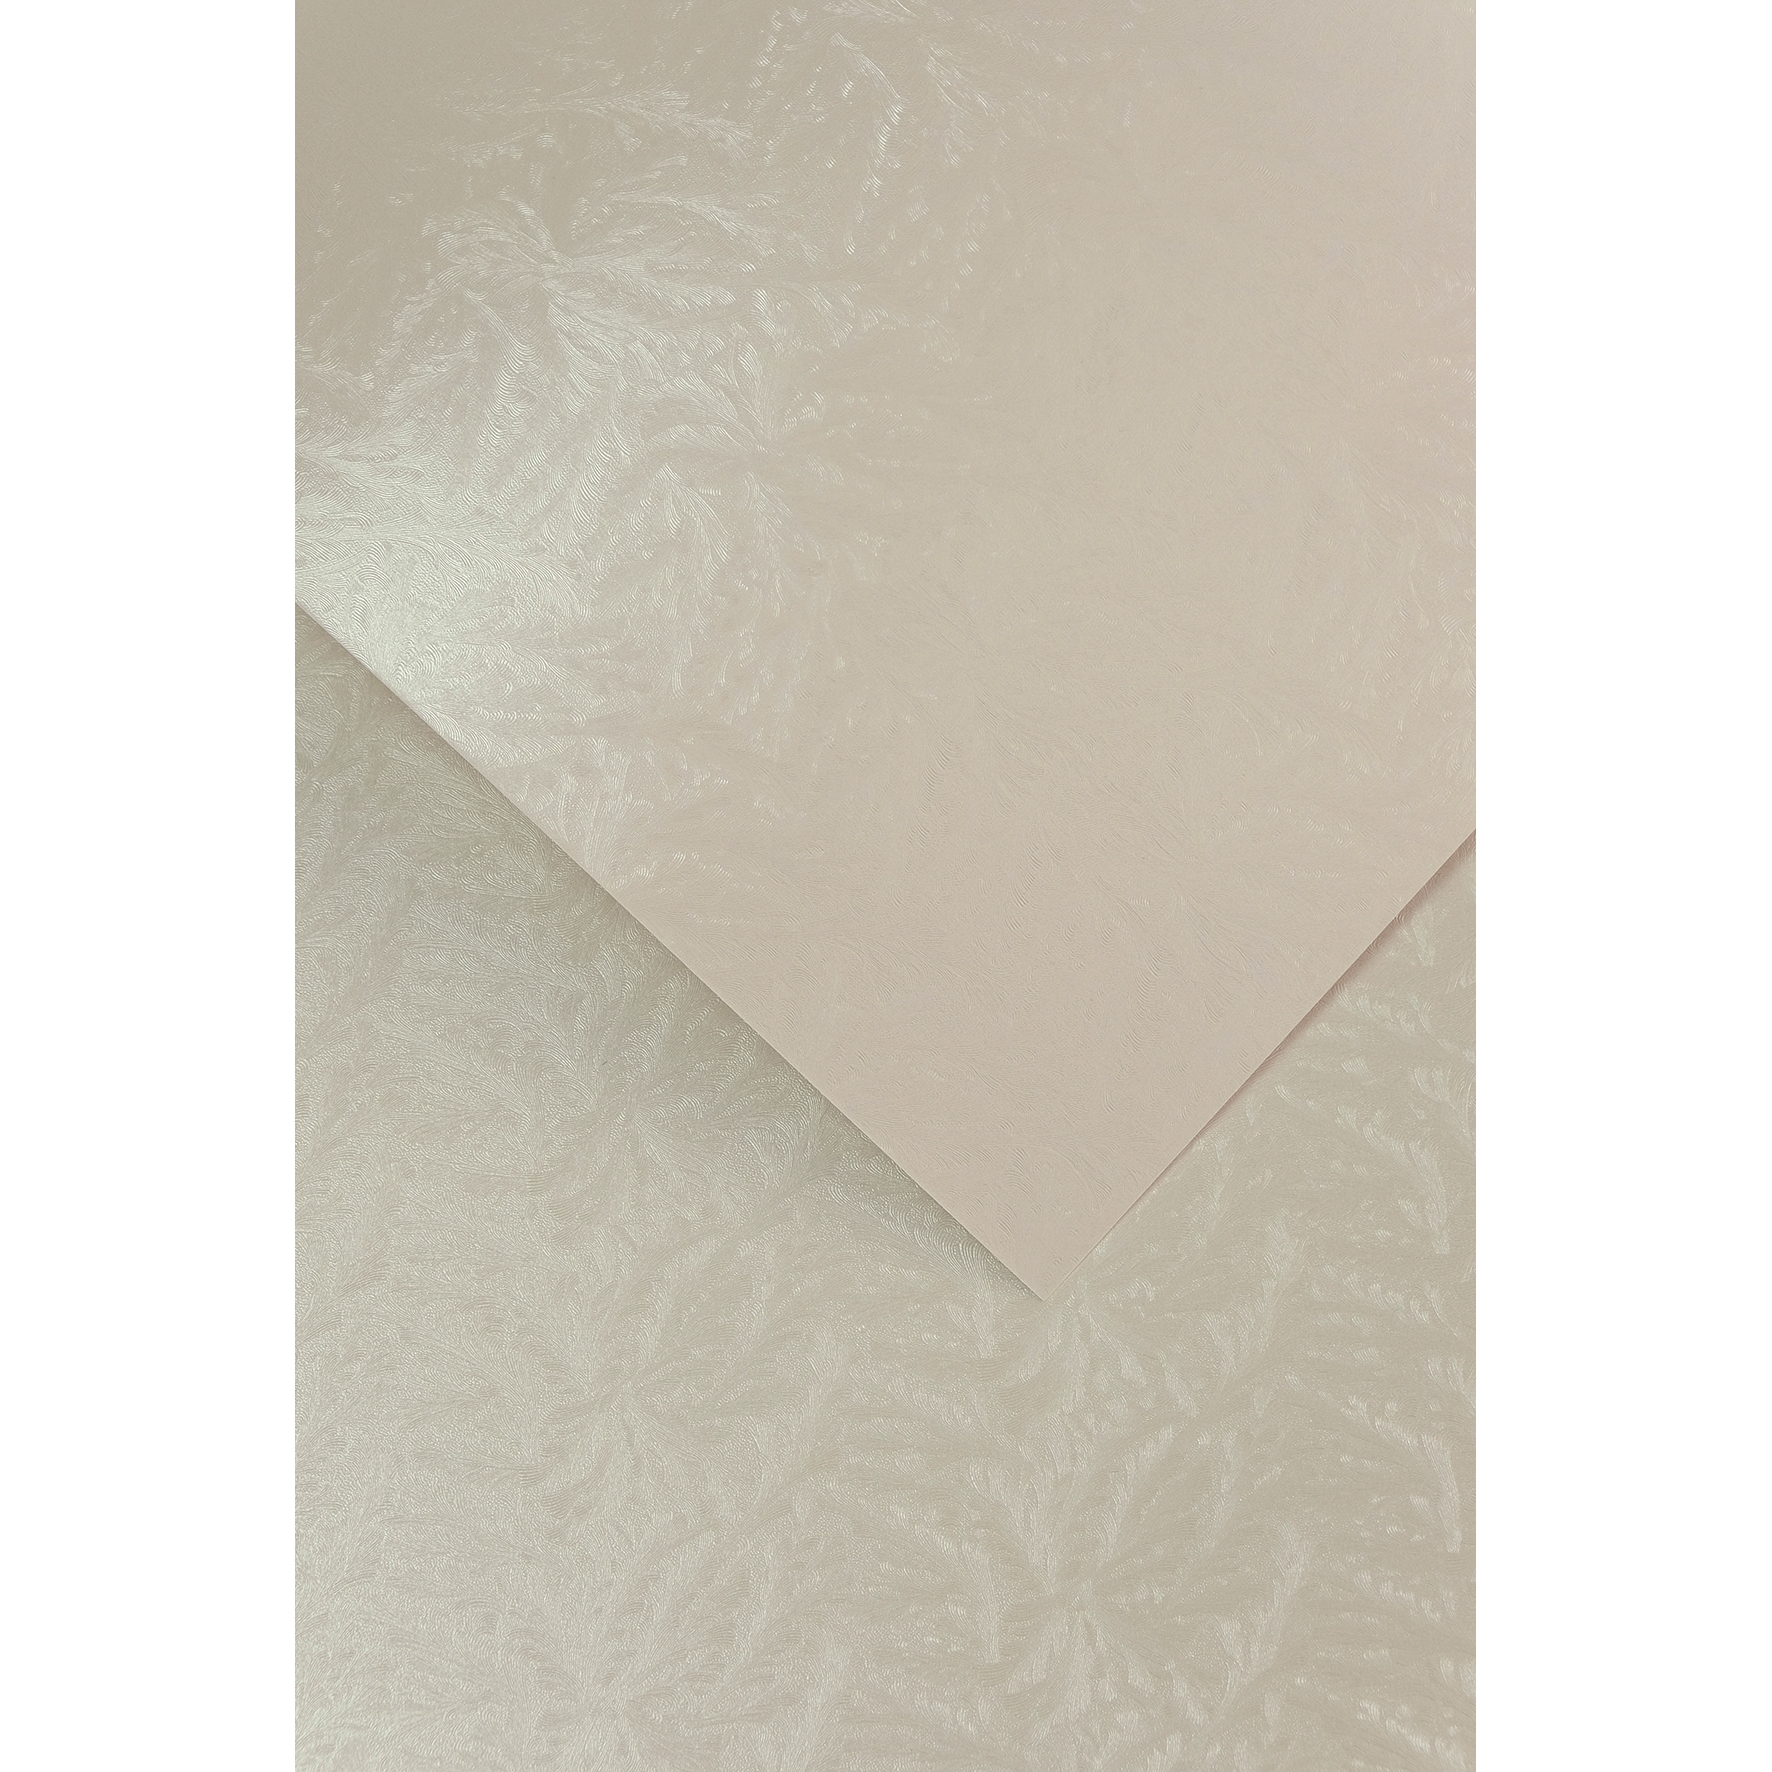 Ozdobný papír Frost, perleť, 230g, 20ks